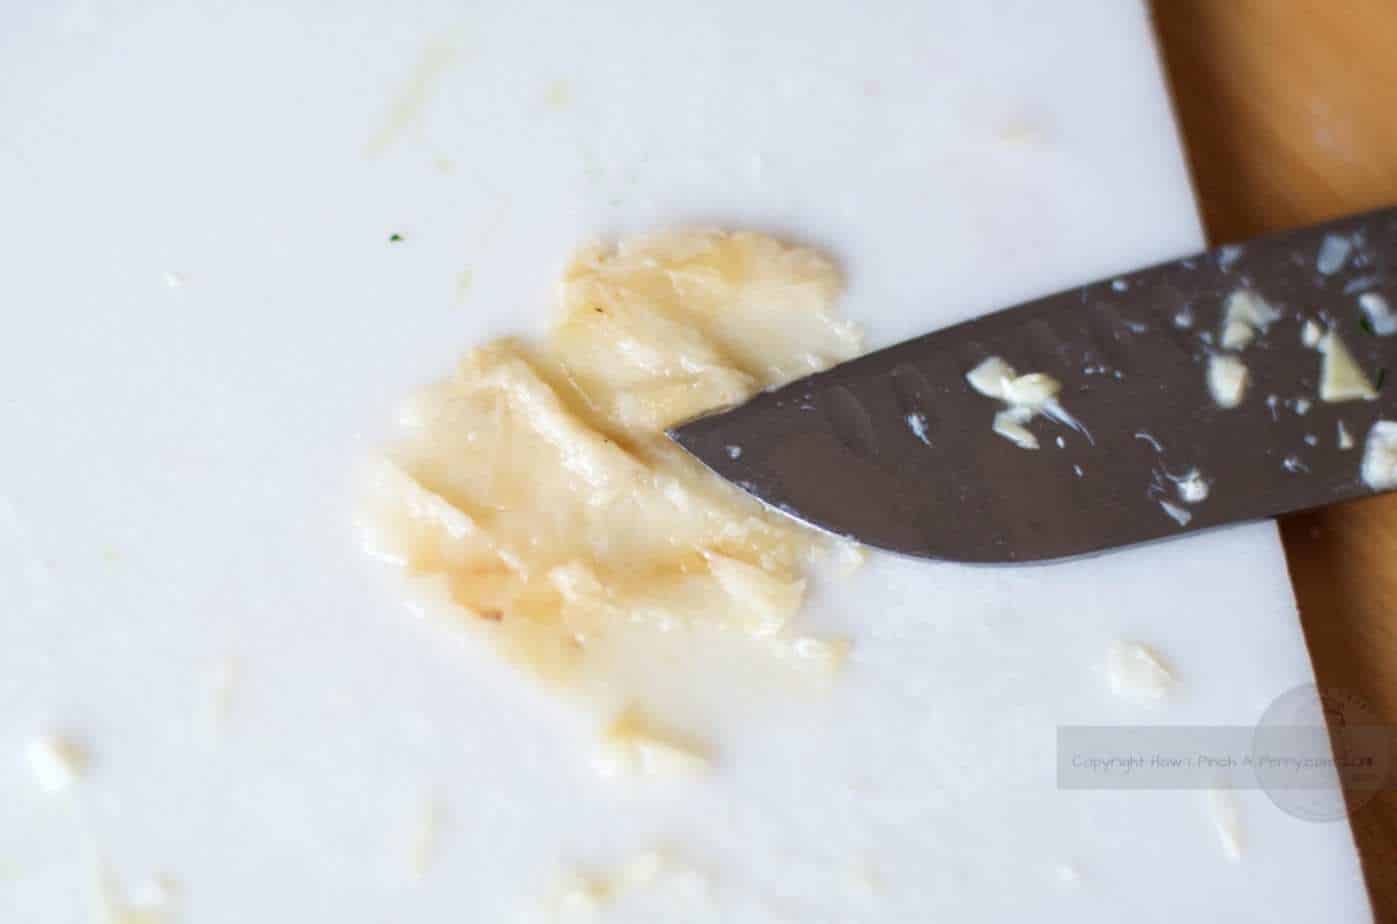 smashed roasted garlic under a knife